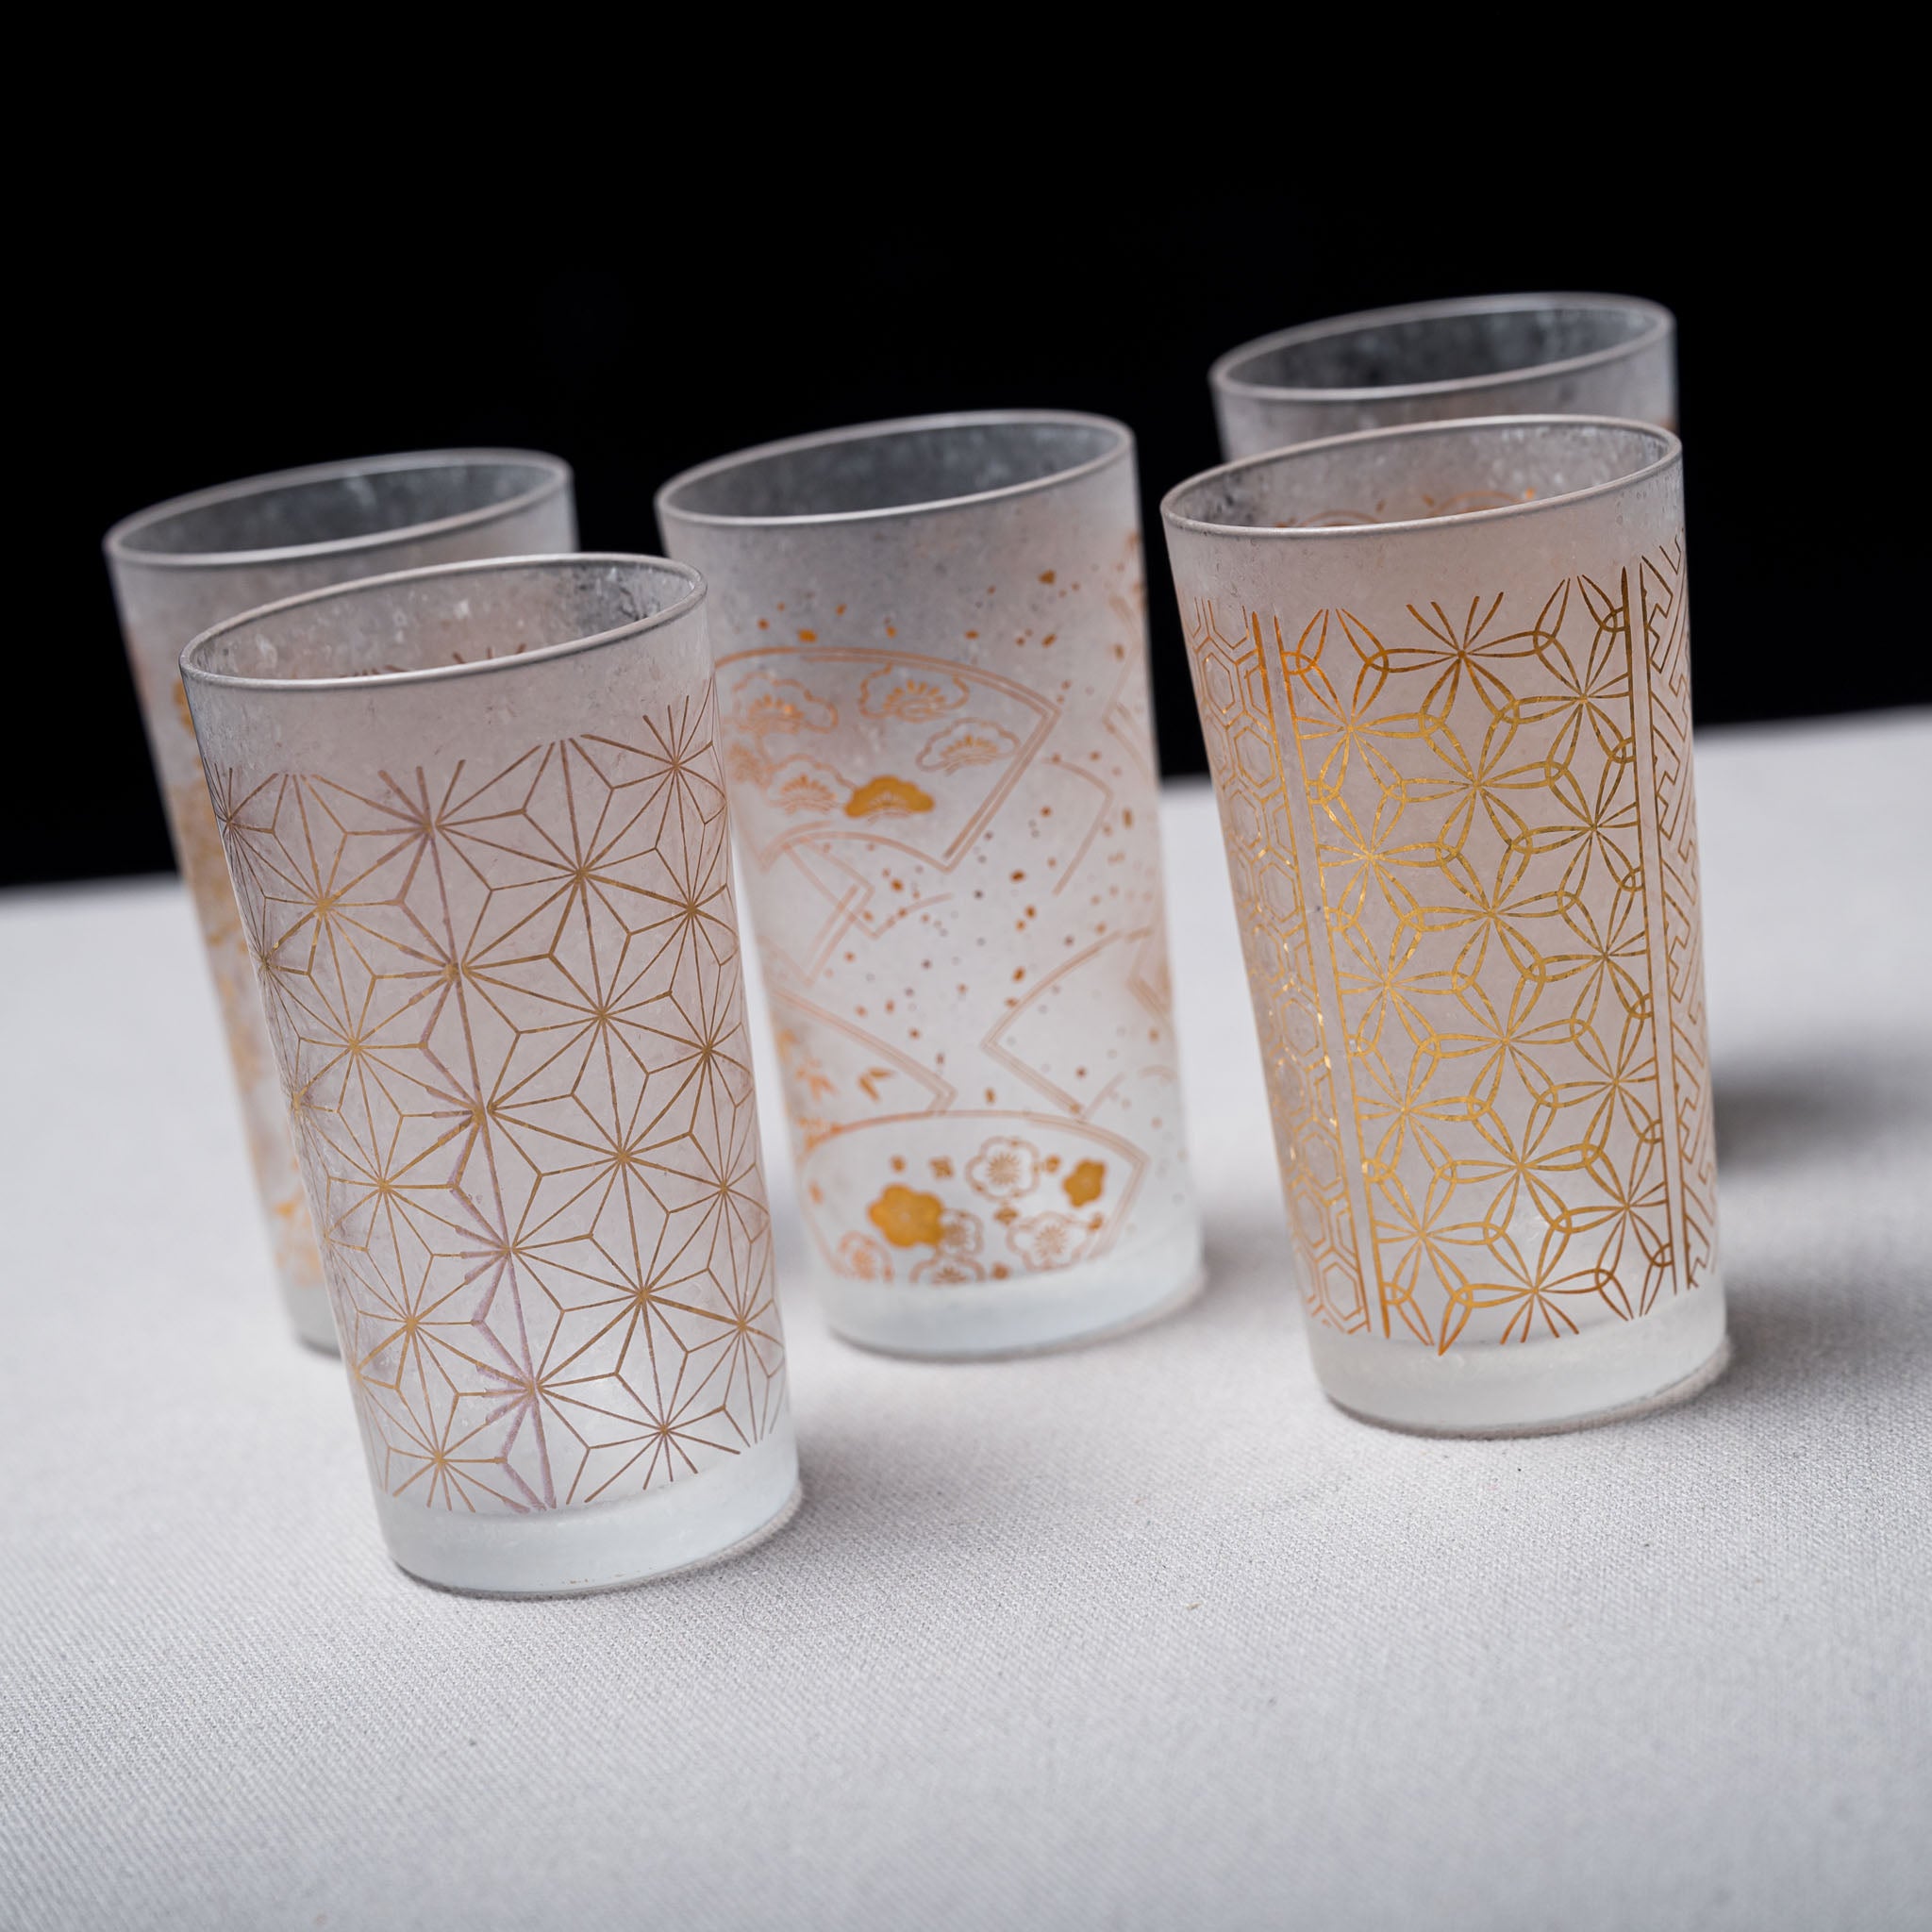 Premium Wakomon Shot Sake Glass - Yukiwa / 和小紋グラス  雪輪